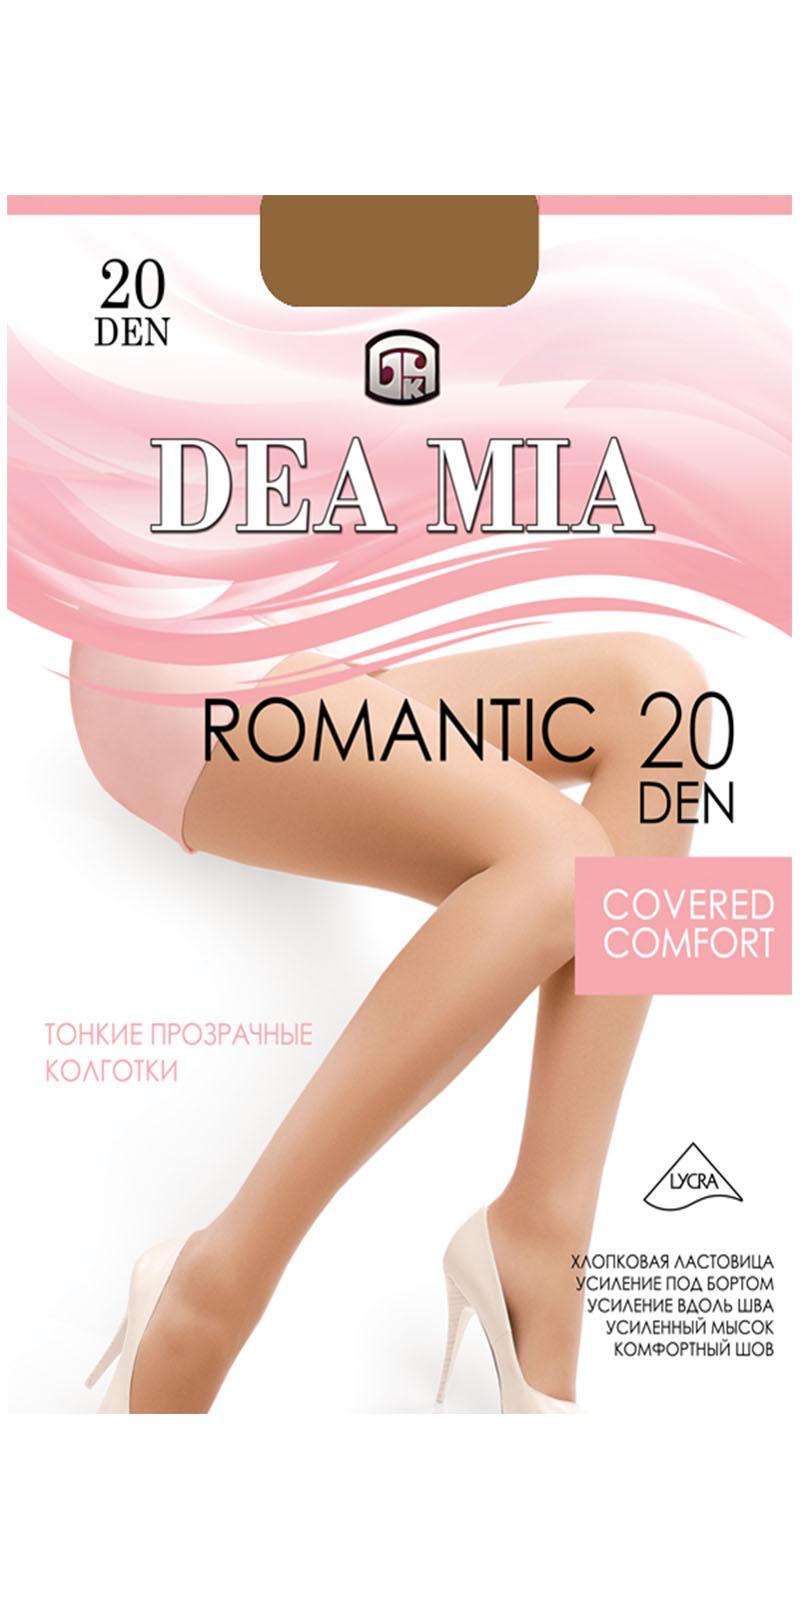 Колготки Dea Mia, (модель 1442 Romantic 20) — Белорусский трикотаж в  интернет-магазине Mirtrik